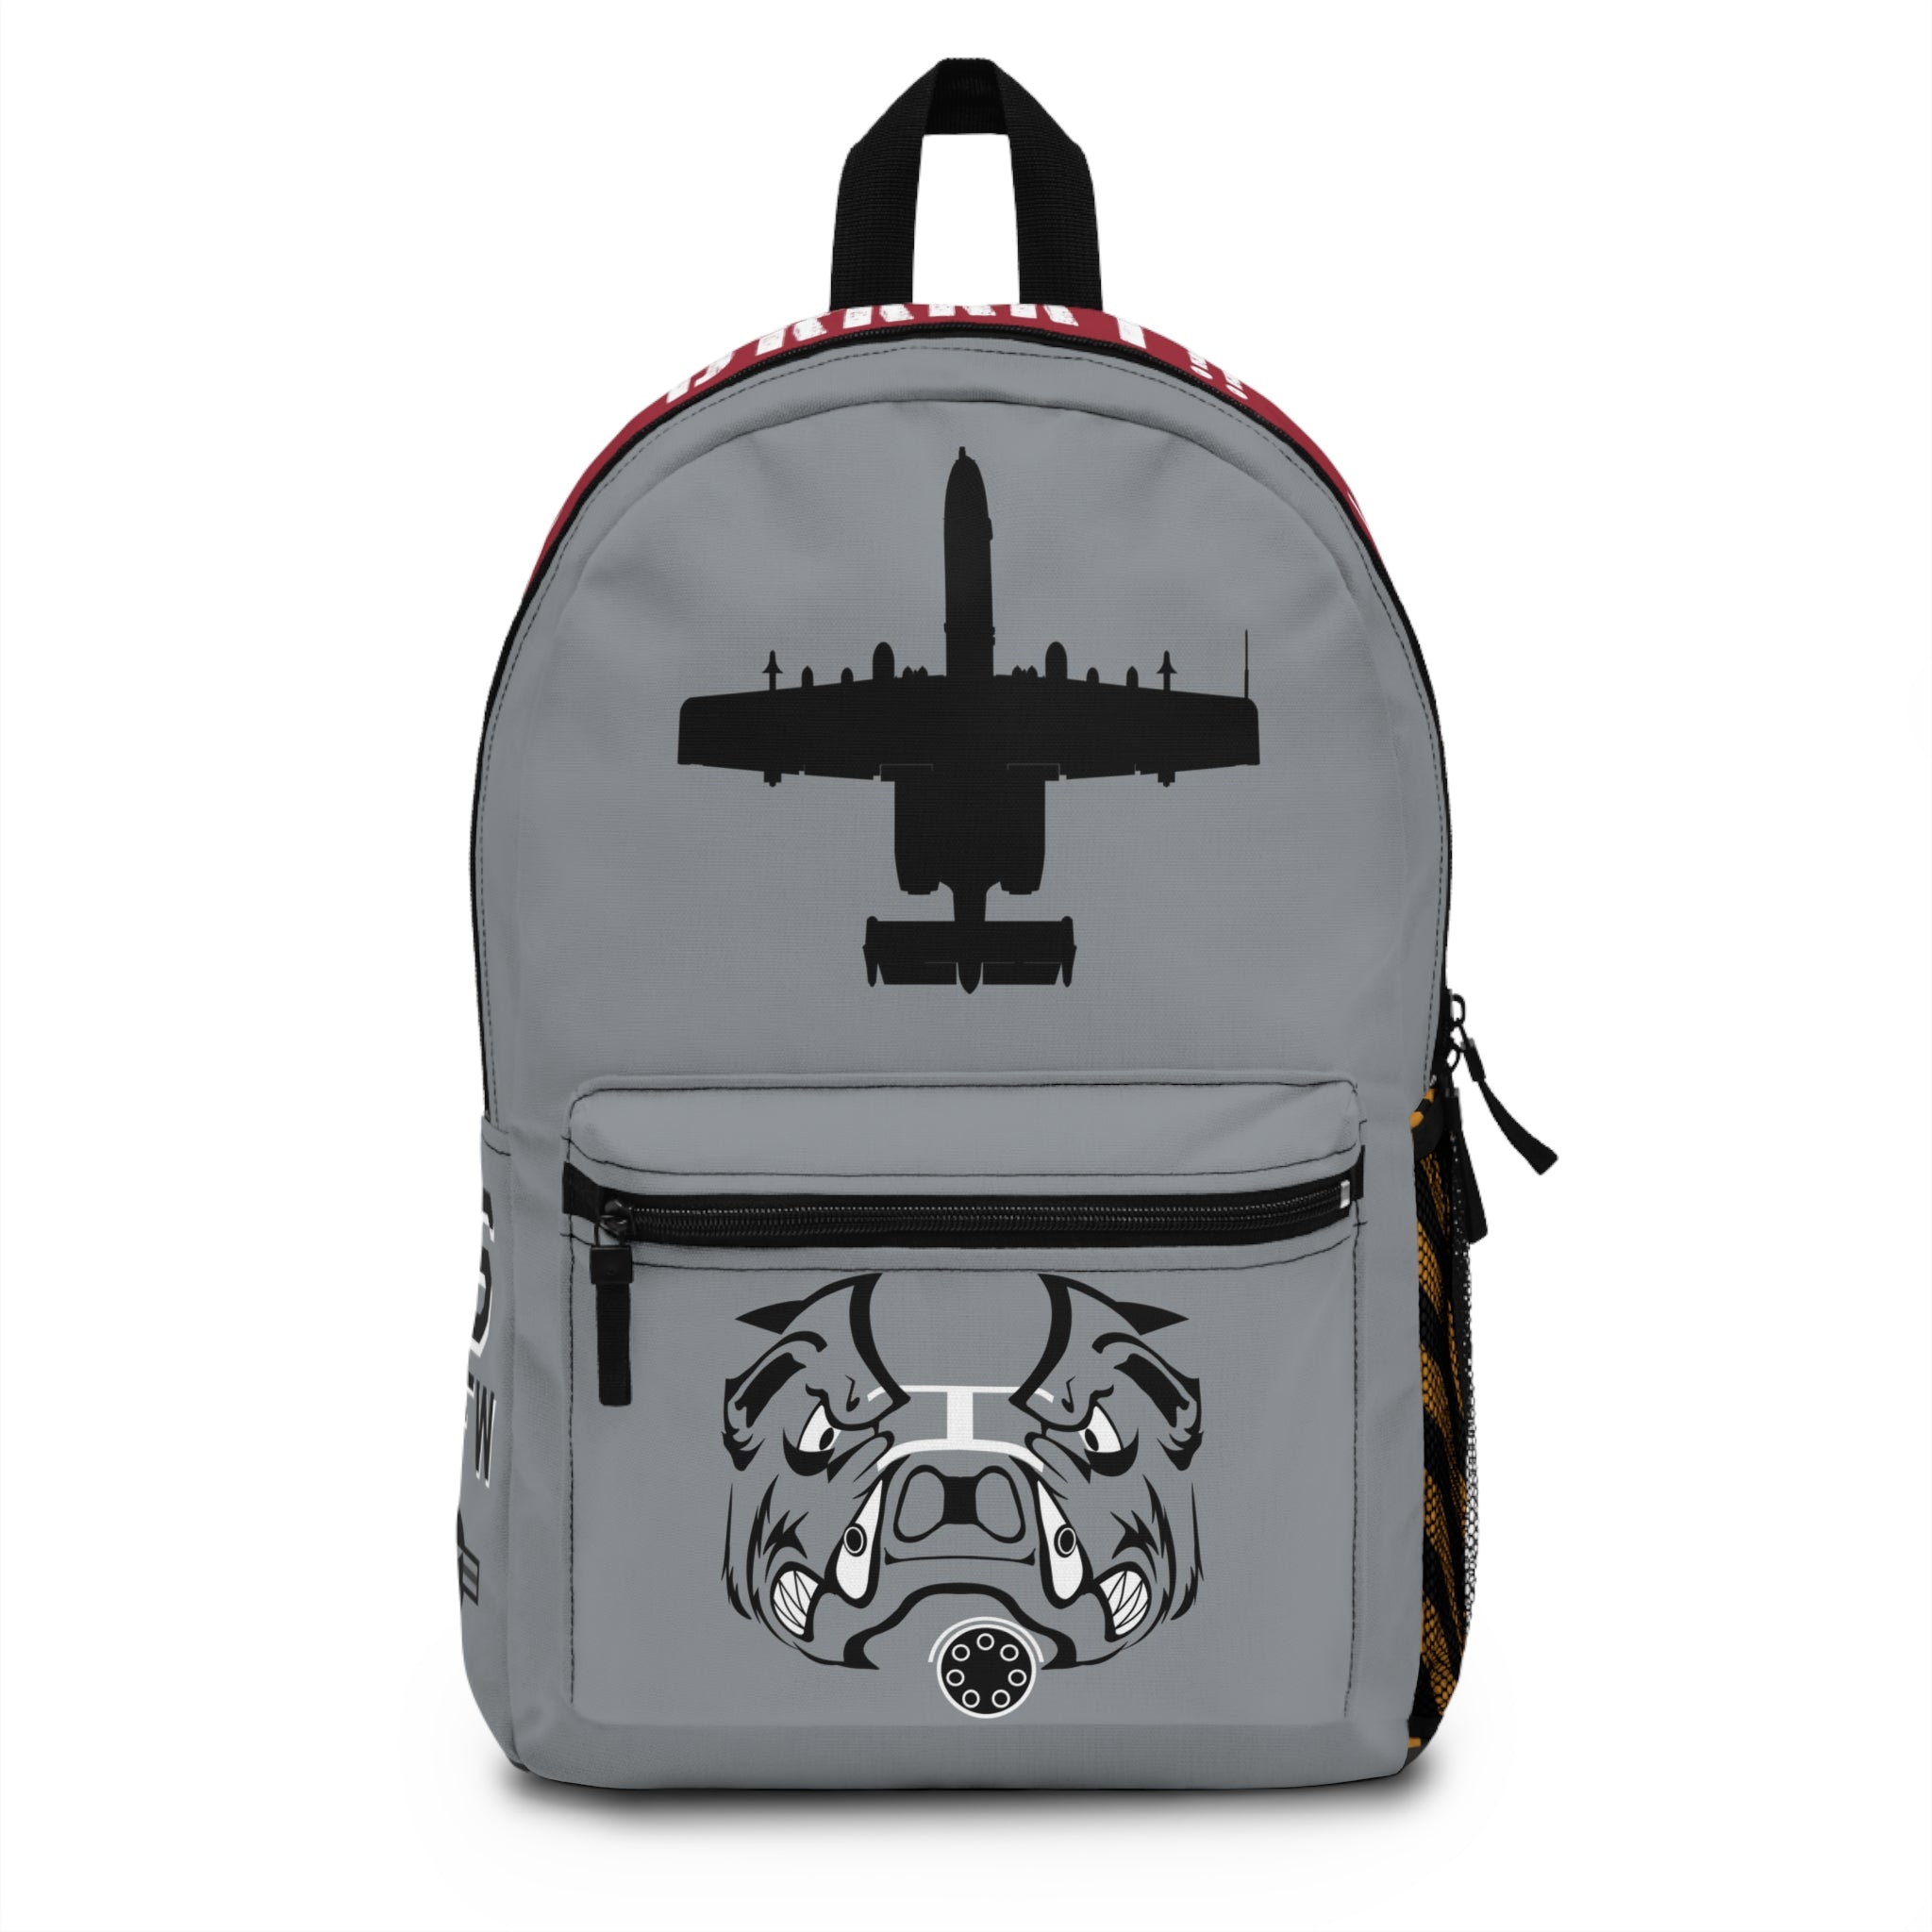 A-10 "Flying Razorbacks" Backpack - I Love a Hangar